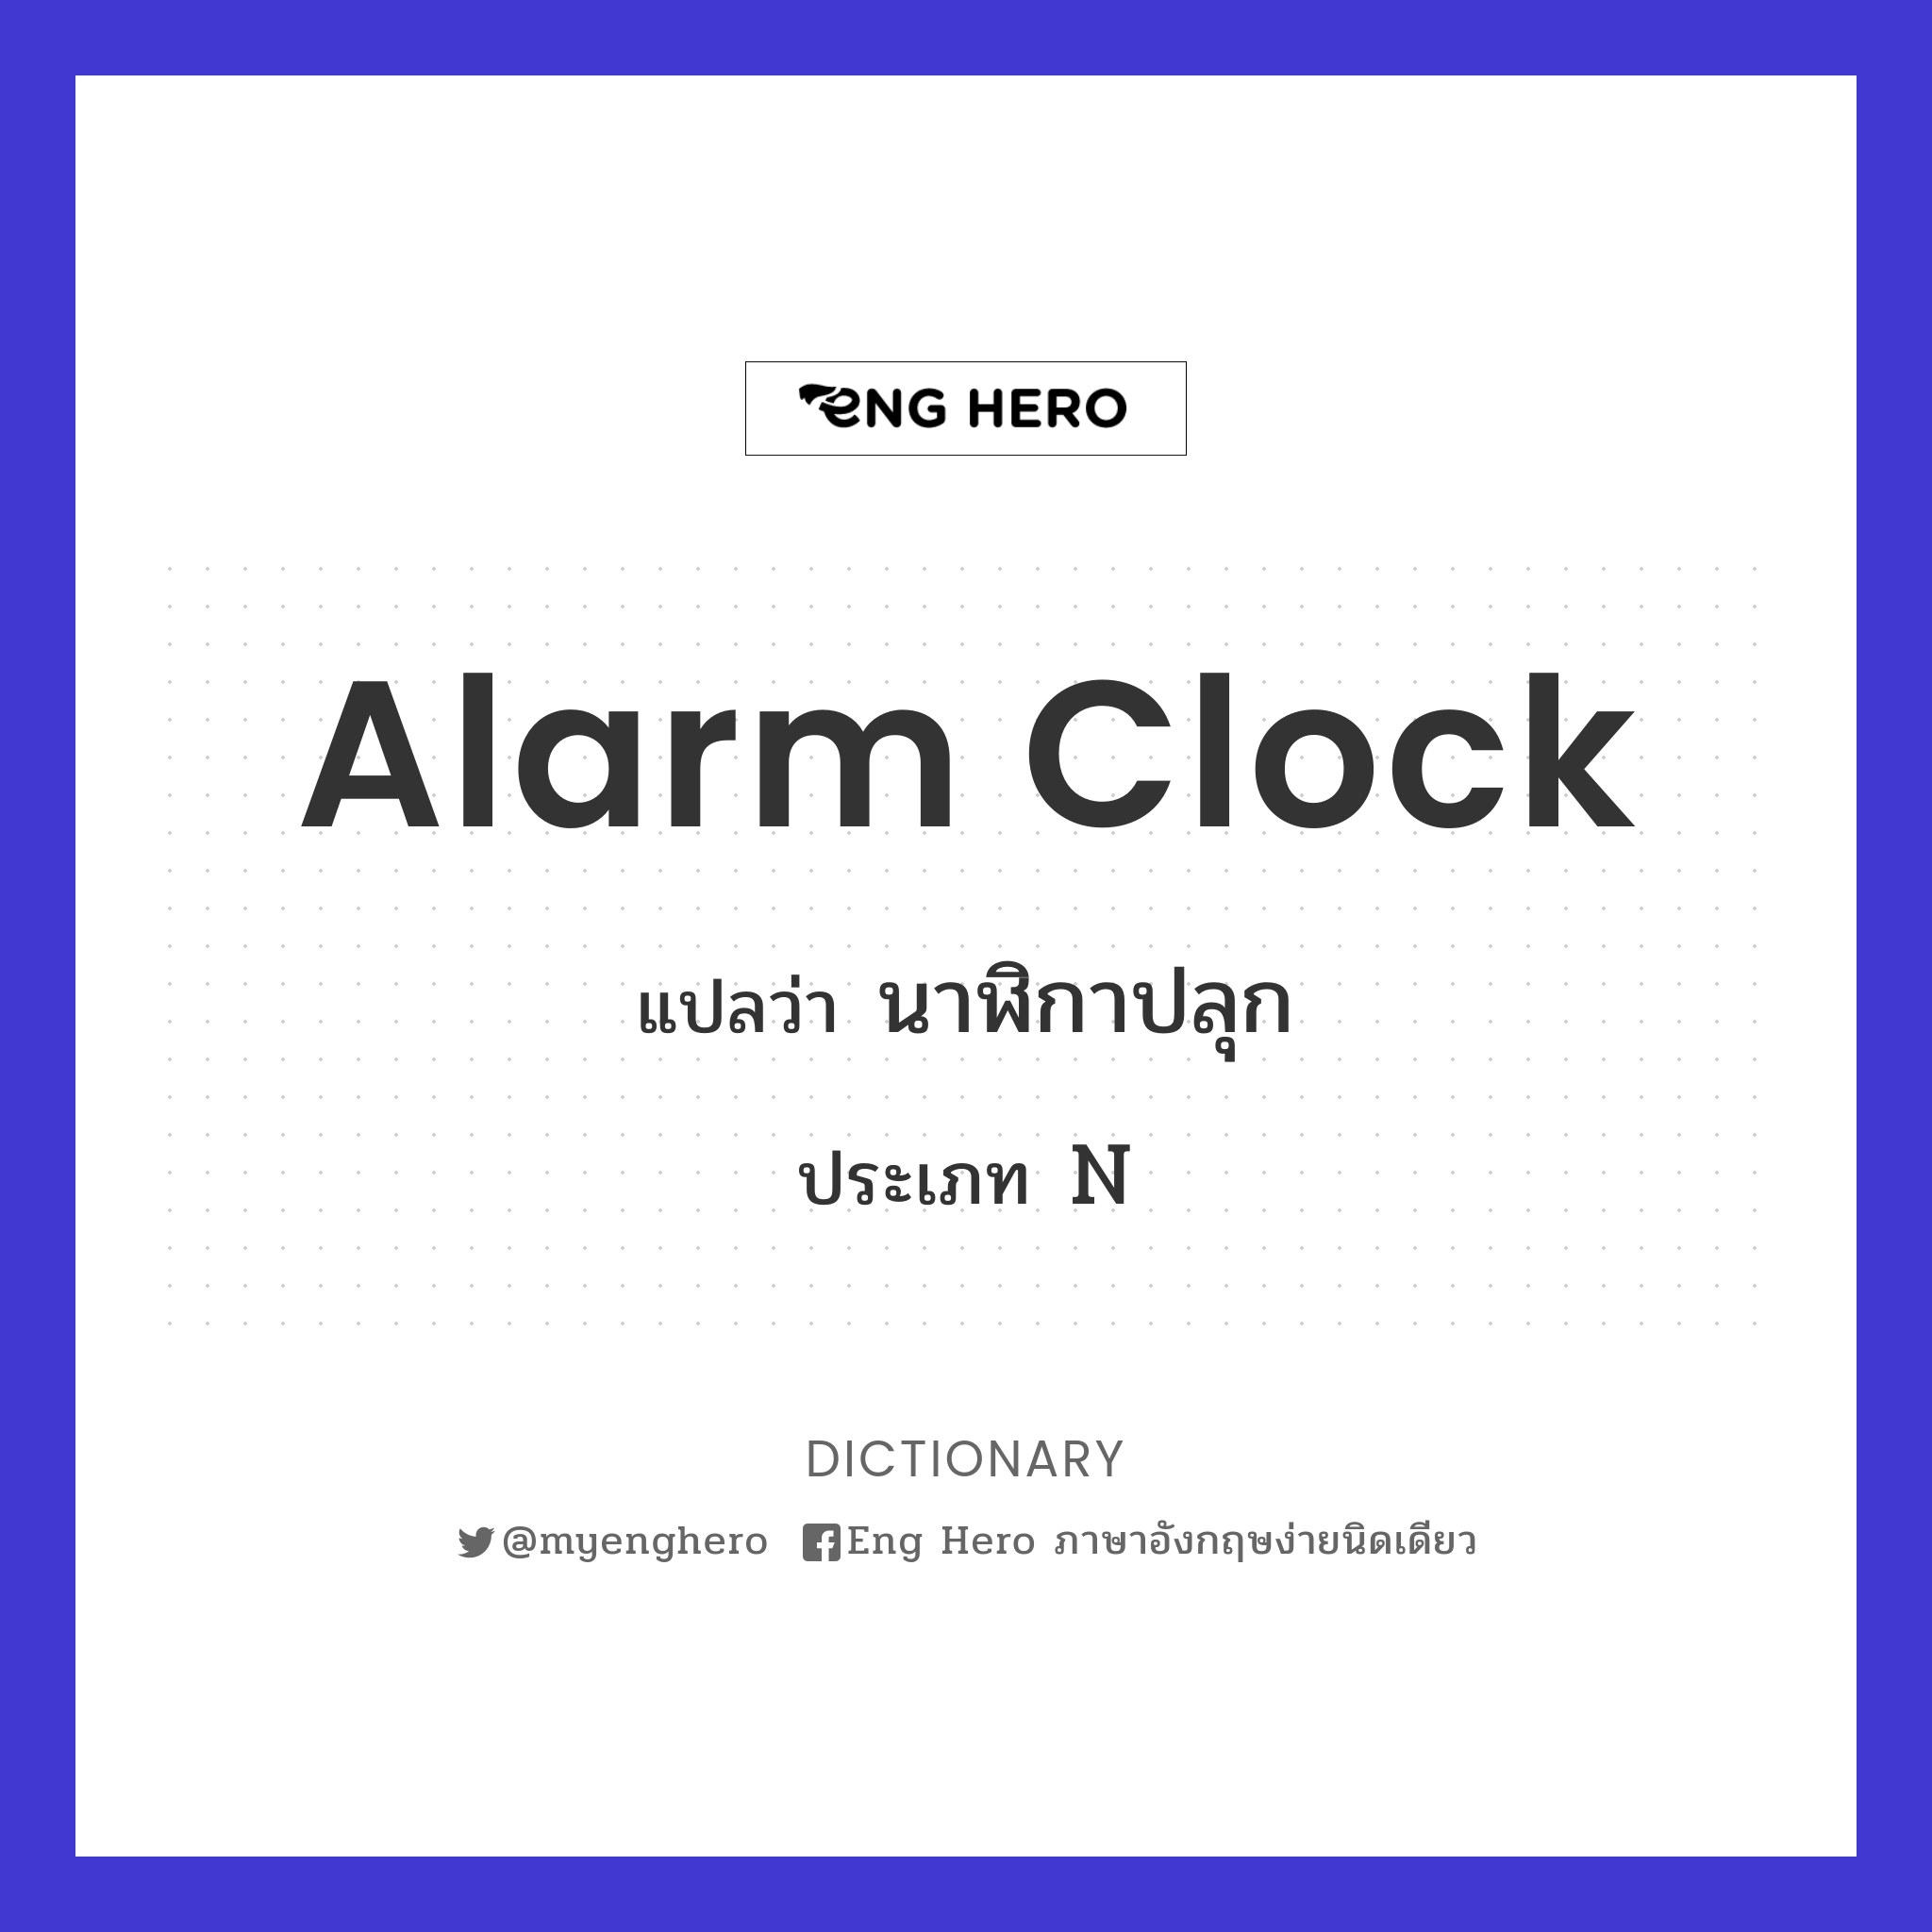 alarm clock